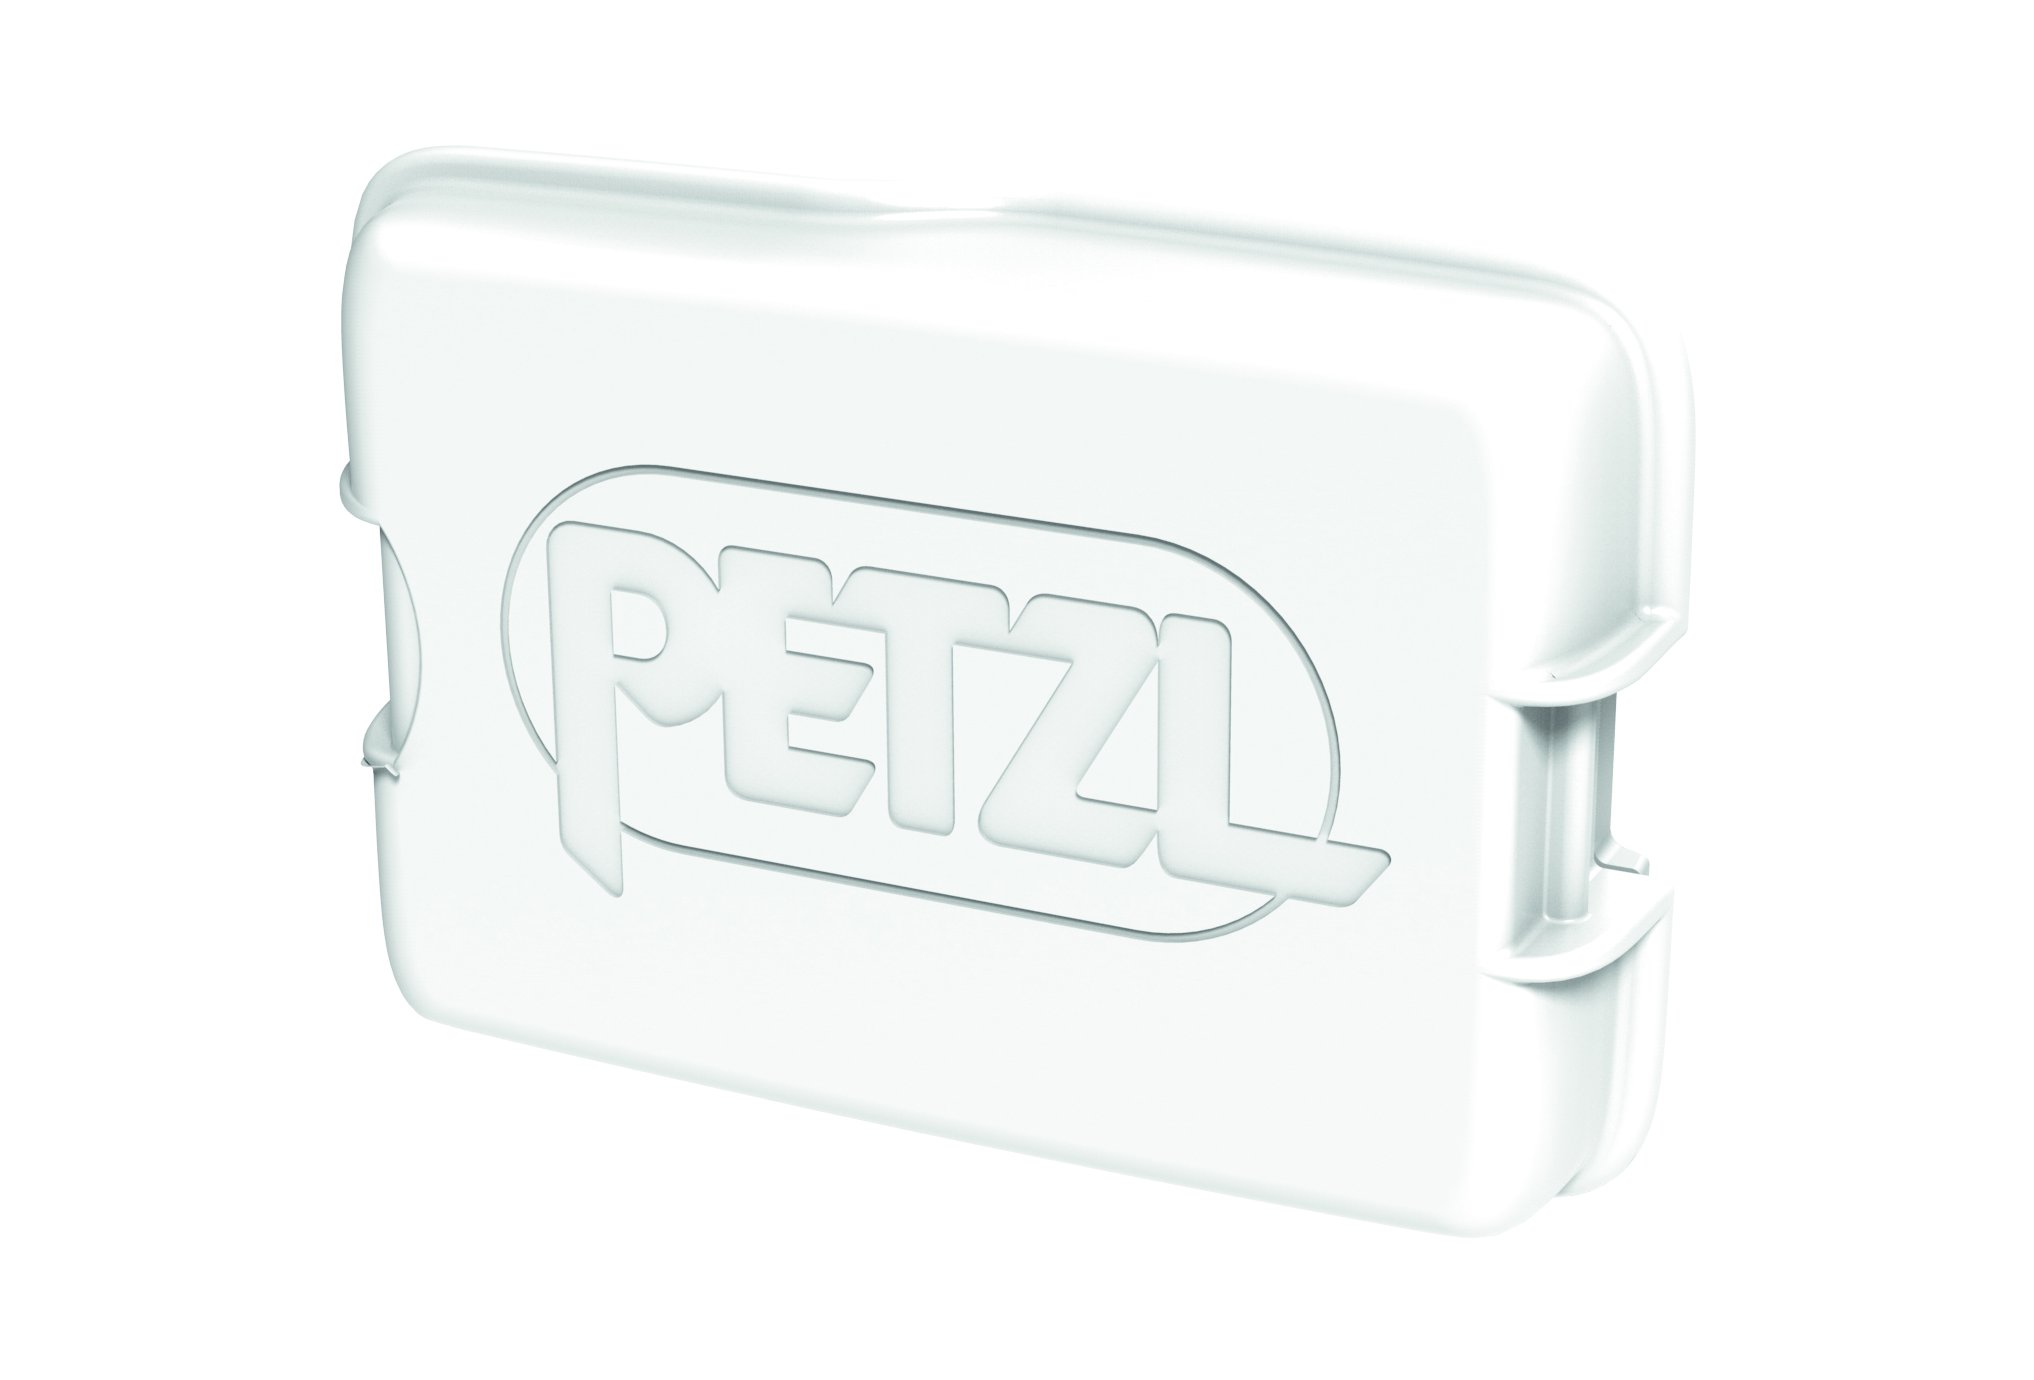 Pack lampe frontale Petzl SWIFT RL 1100Lumens + 1 accu pour les  professionnels des métiers de la maintenance